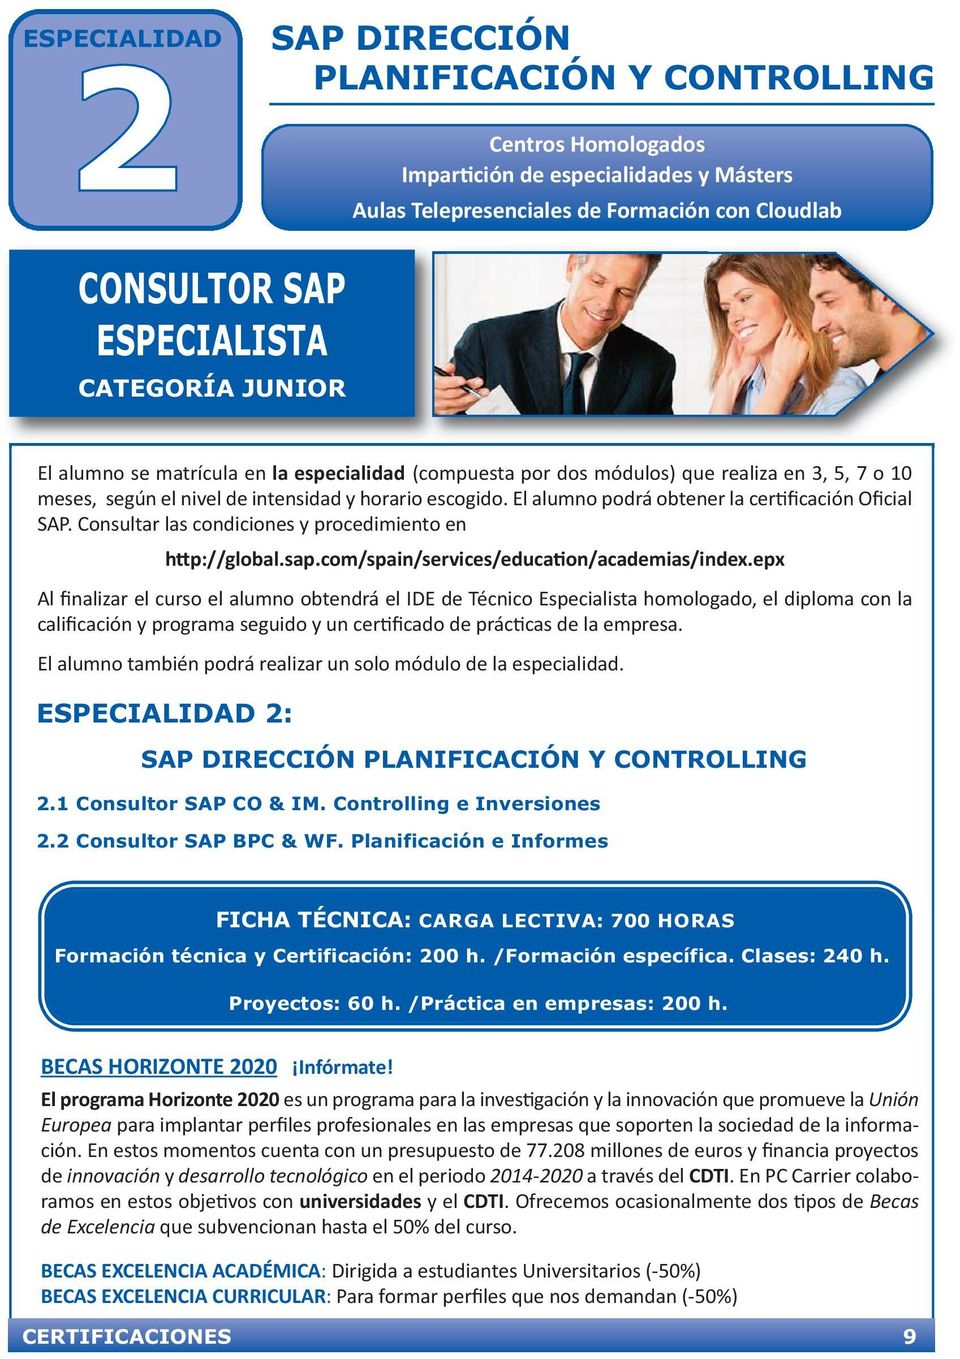 El alumno podrá obtener la certificación Oficial SAP. Consultar las condiciones y procedimiento en http://global.sap.com/spain/services/education/academias/index.